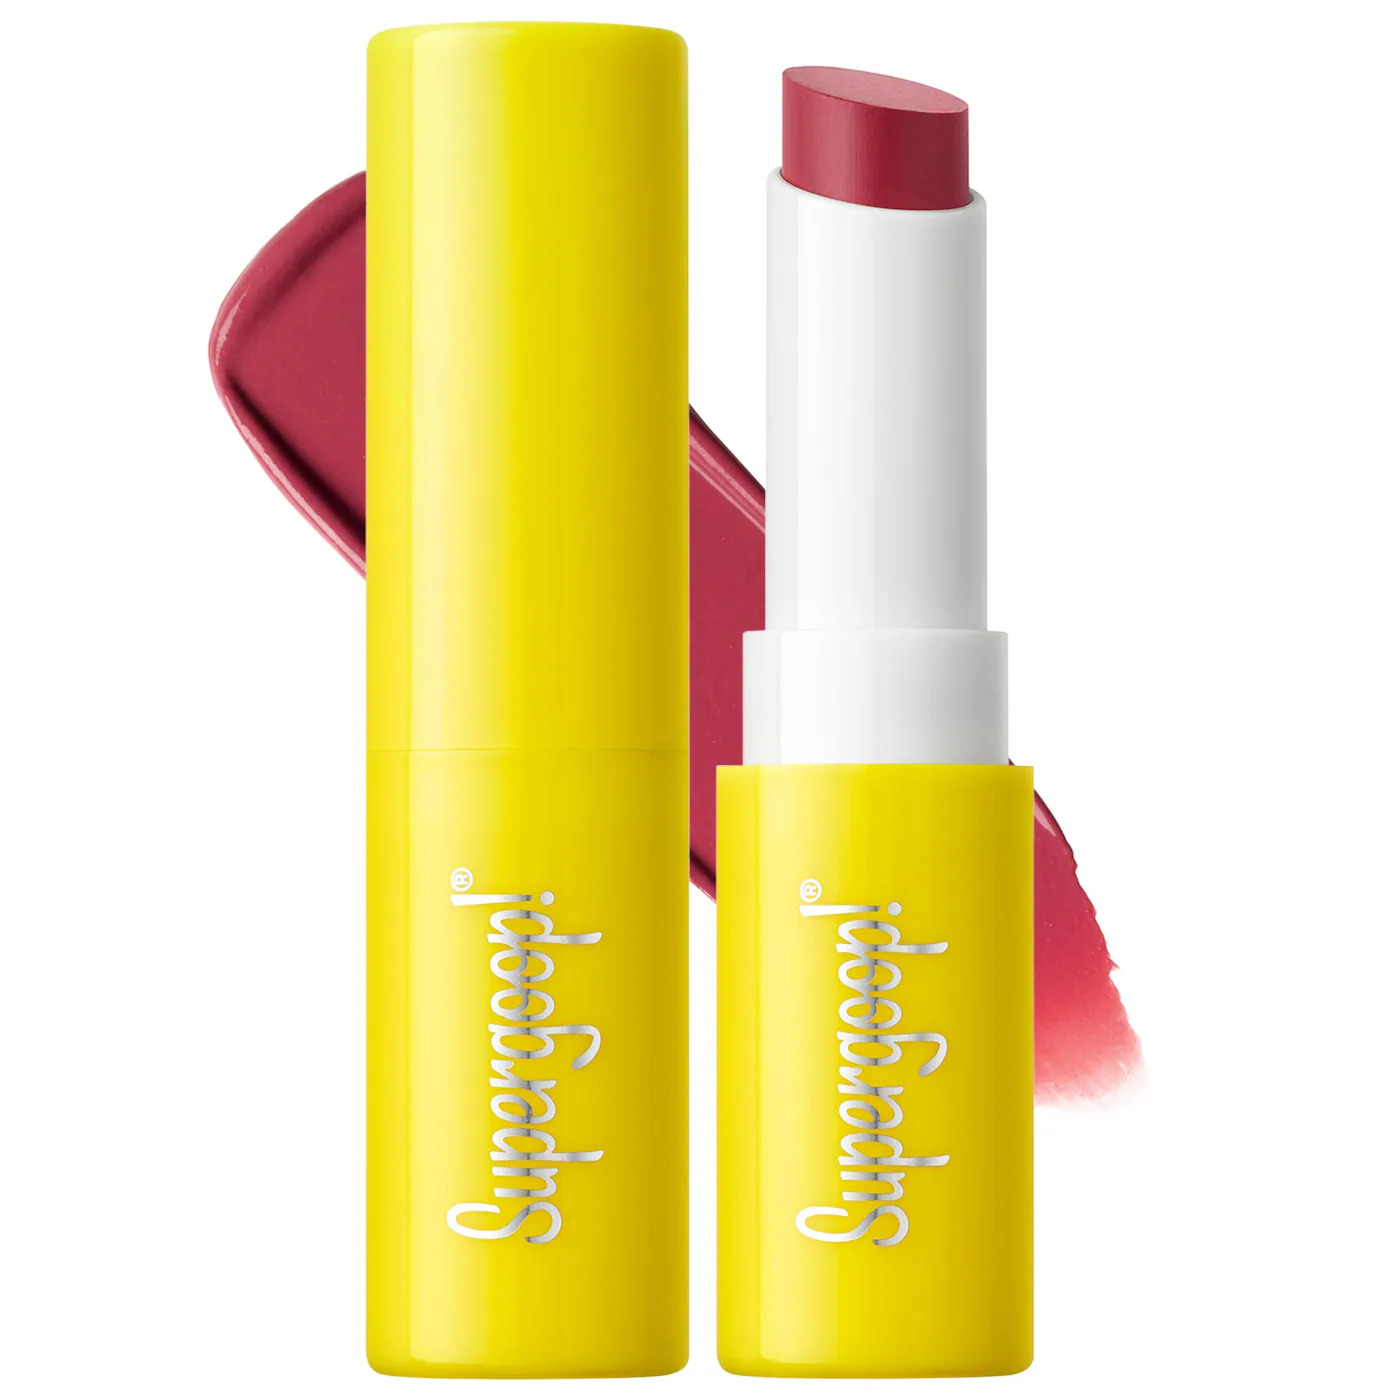 Supergoop! Mineral SPF lipstick. Best lipstick with SPF.